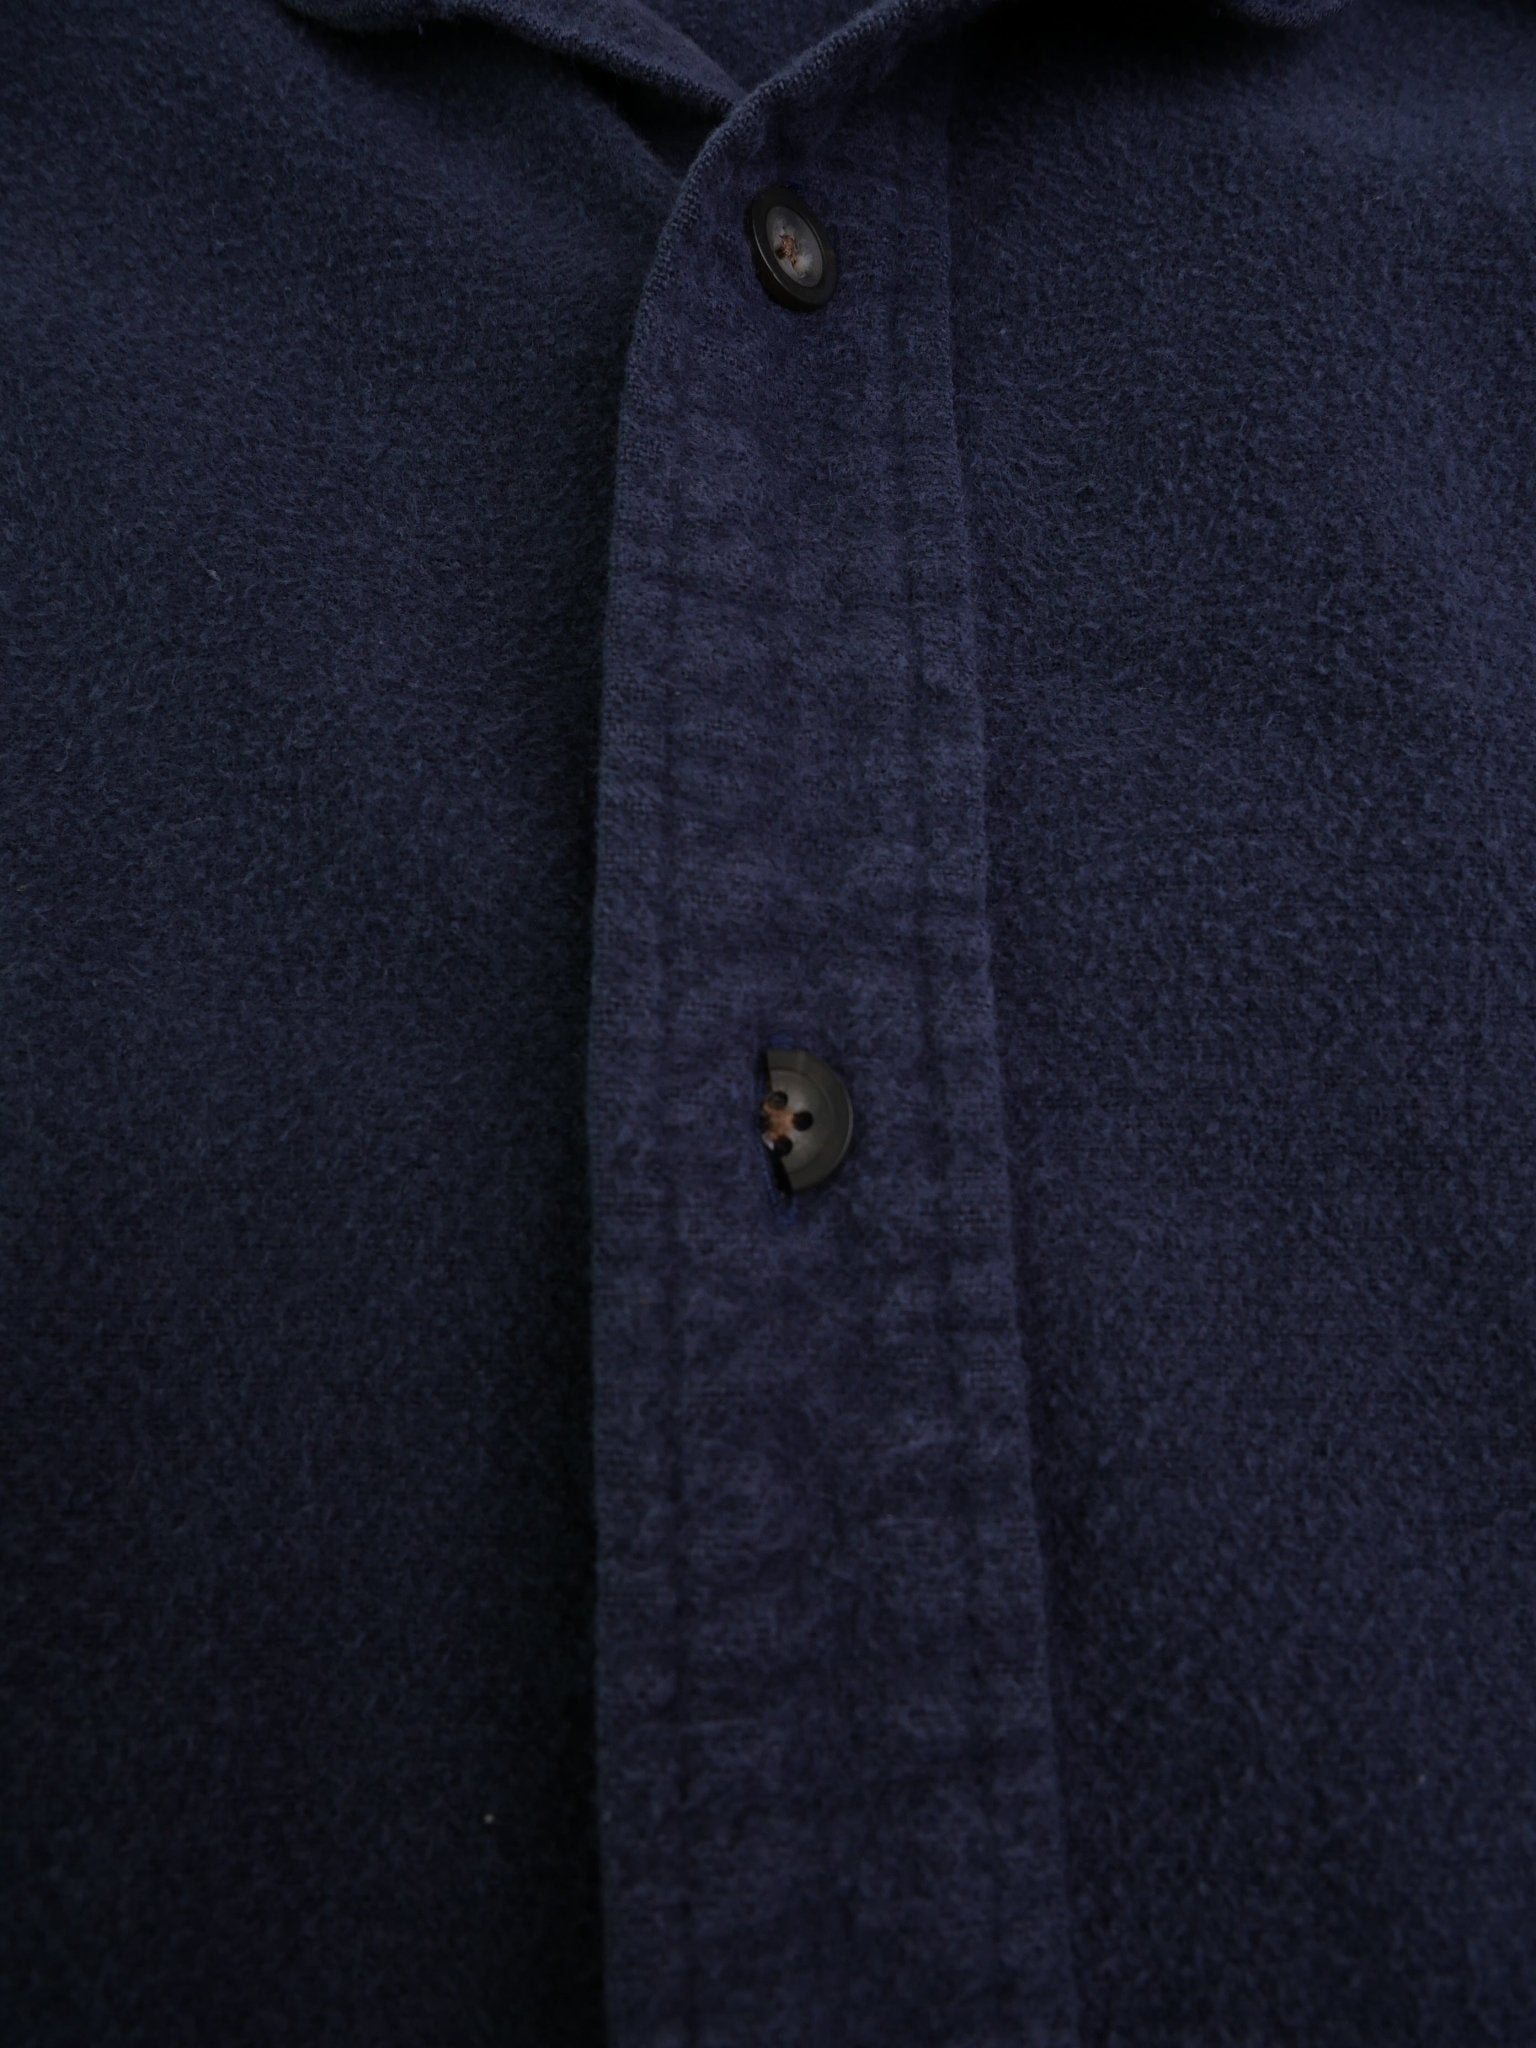 Basic blue Vintage Langarm Hemd - Peeces